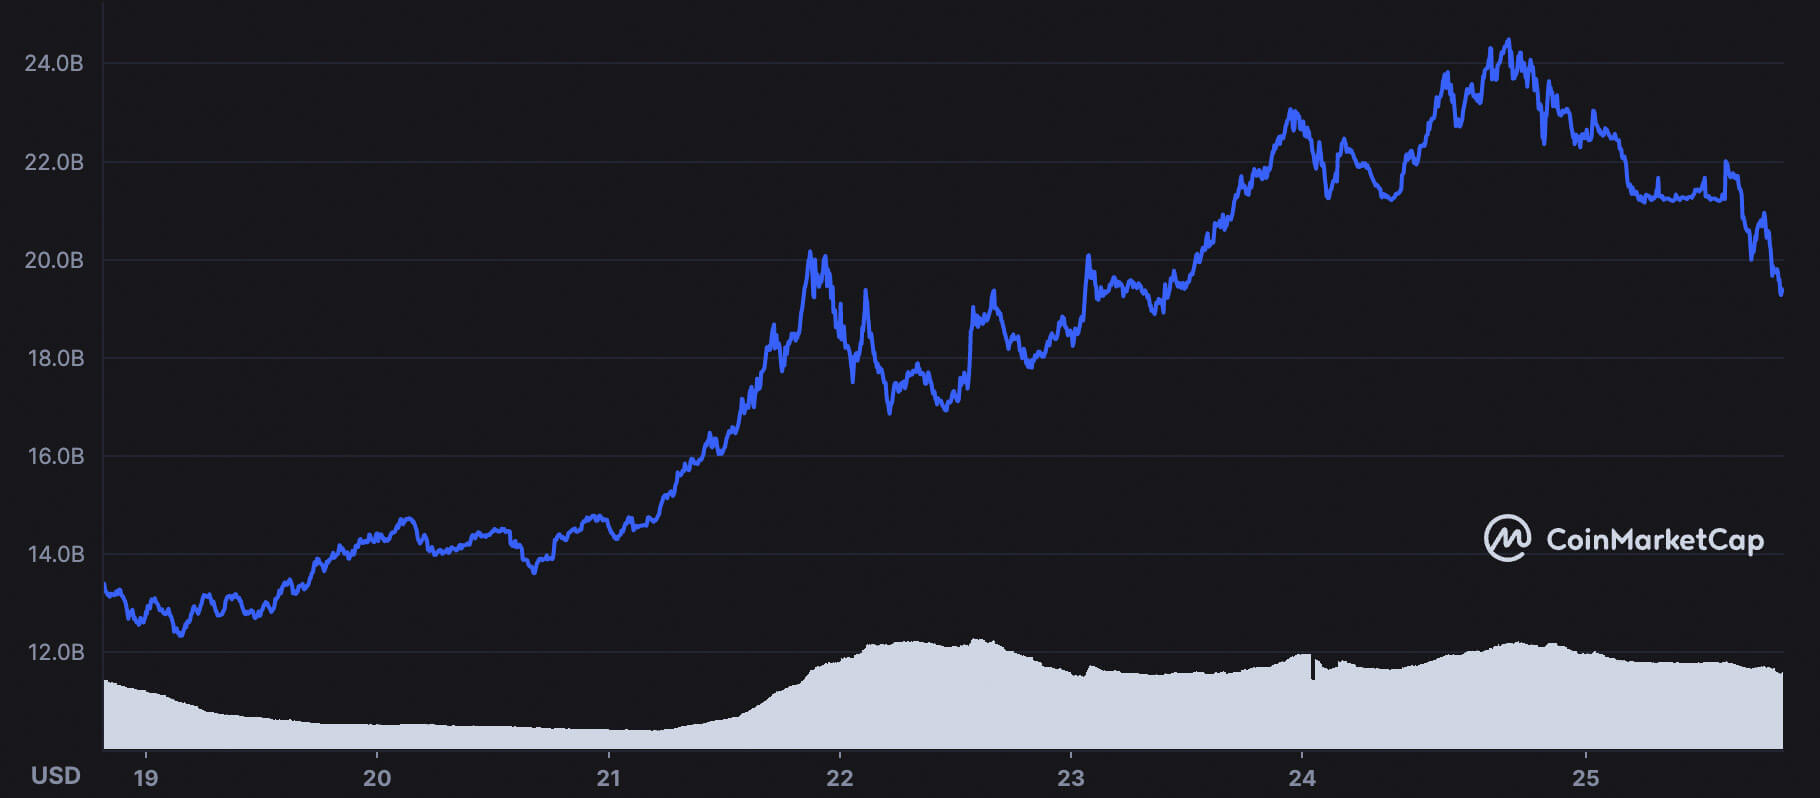 Incluso después de enfriarse en los últimos días, el token CRO añadió más de 7.000 millones de dólares a su capitalización de mercado durante la semana pasada.